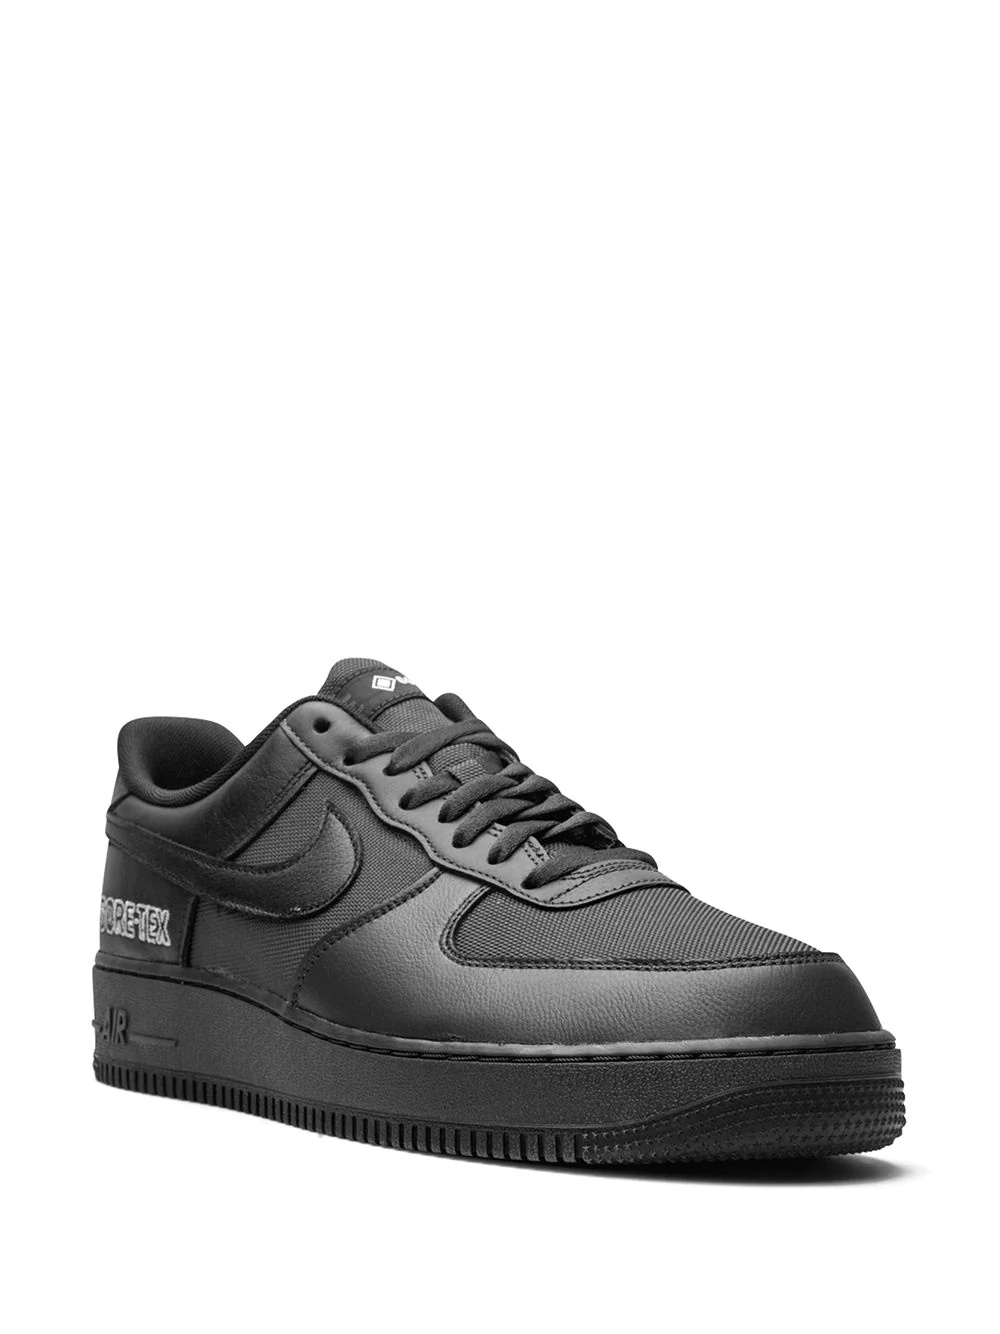 Air Force 1 Low Gore-Tex "Black" sneakers - 2